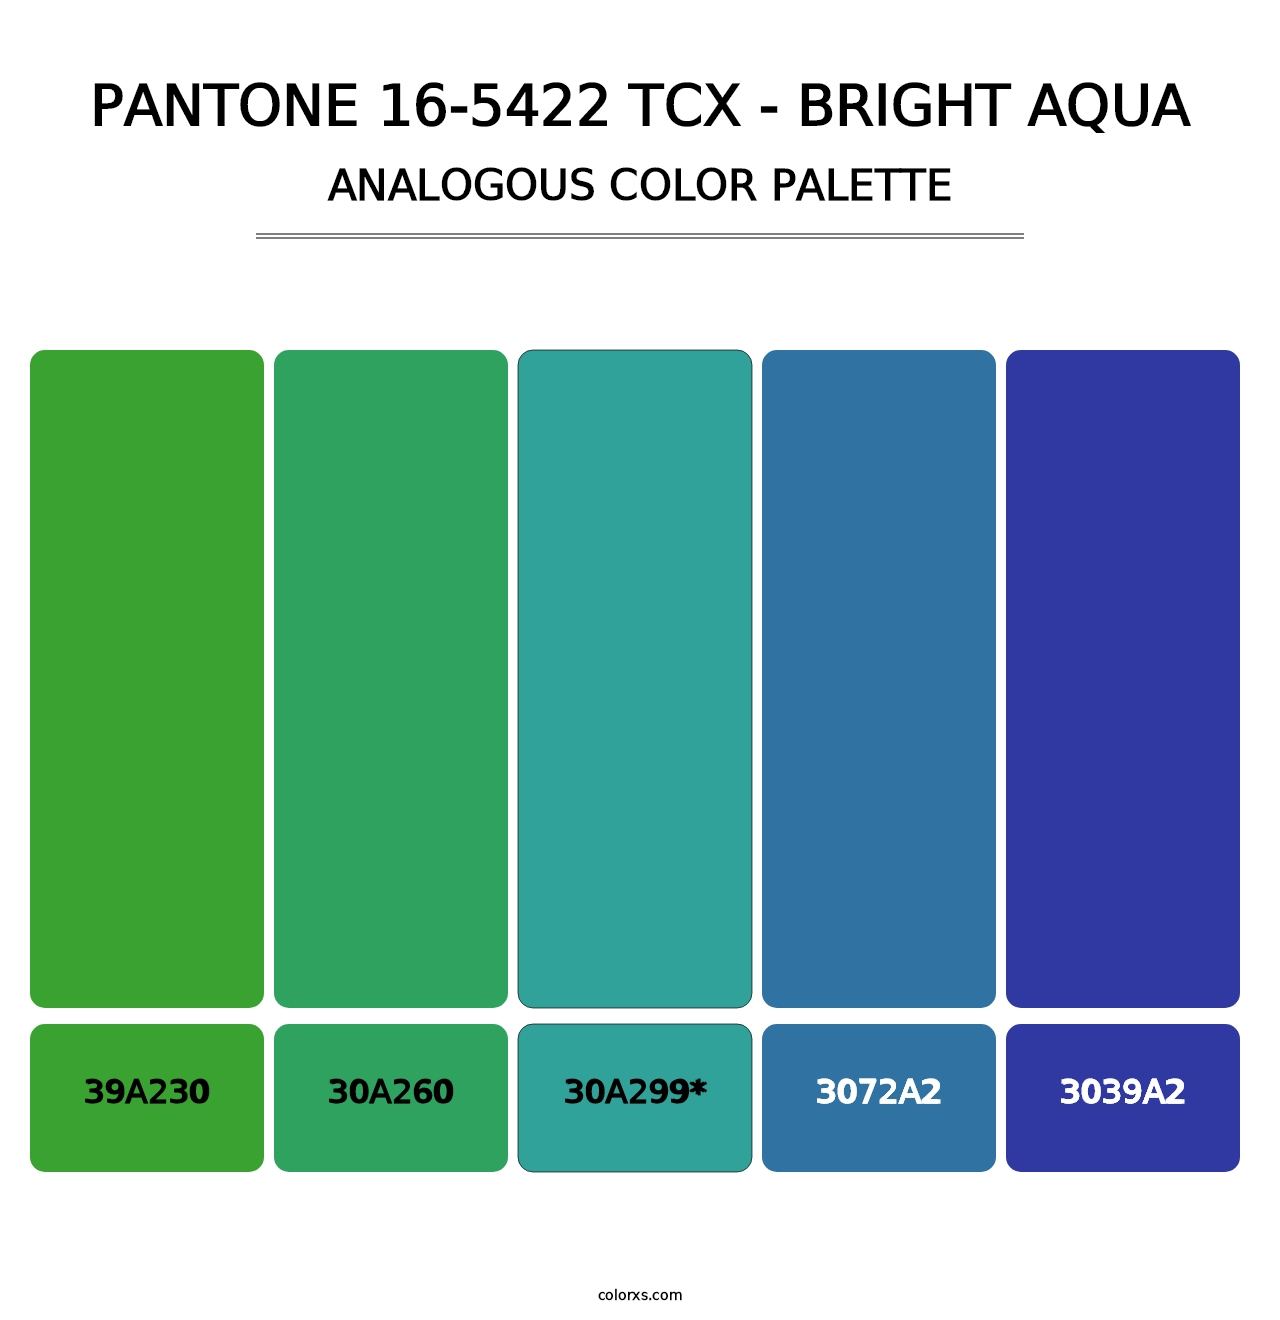 PANTONE 16-5422 TCX - Bright Aqua - Analogous Color Palette